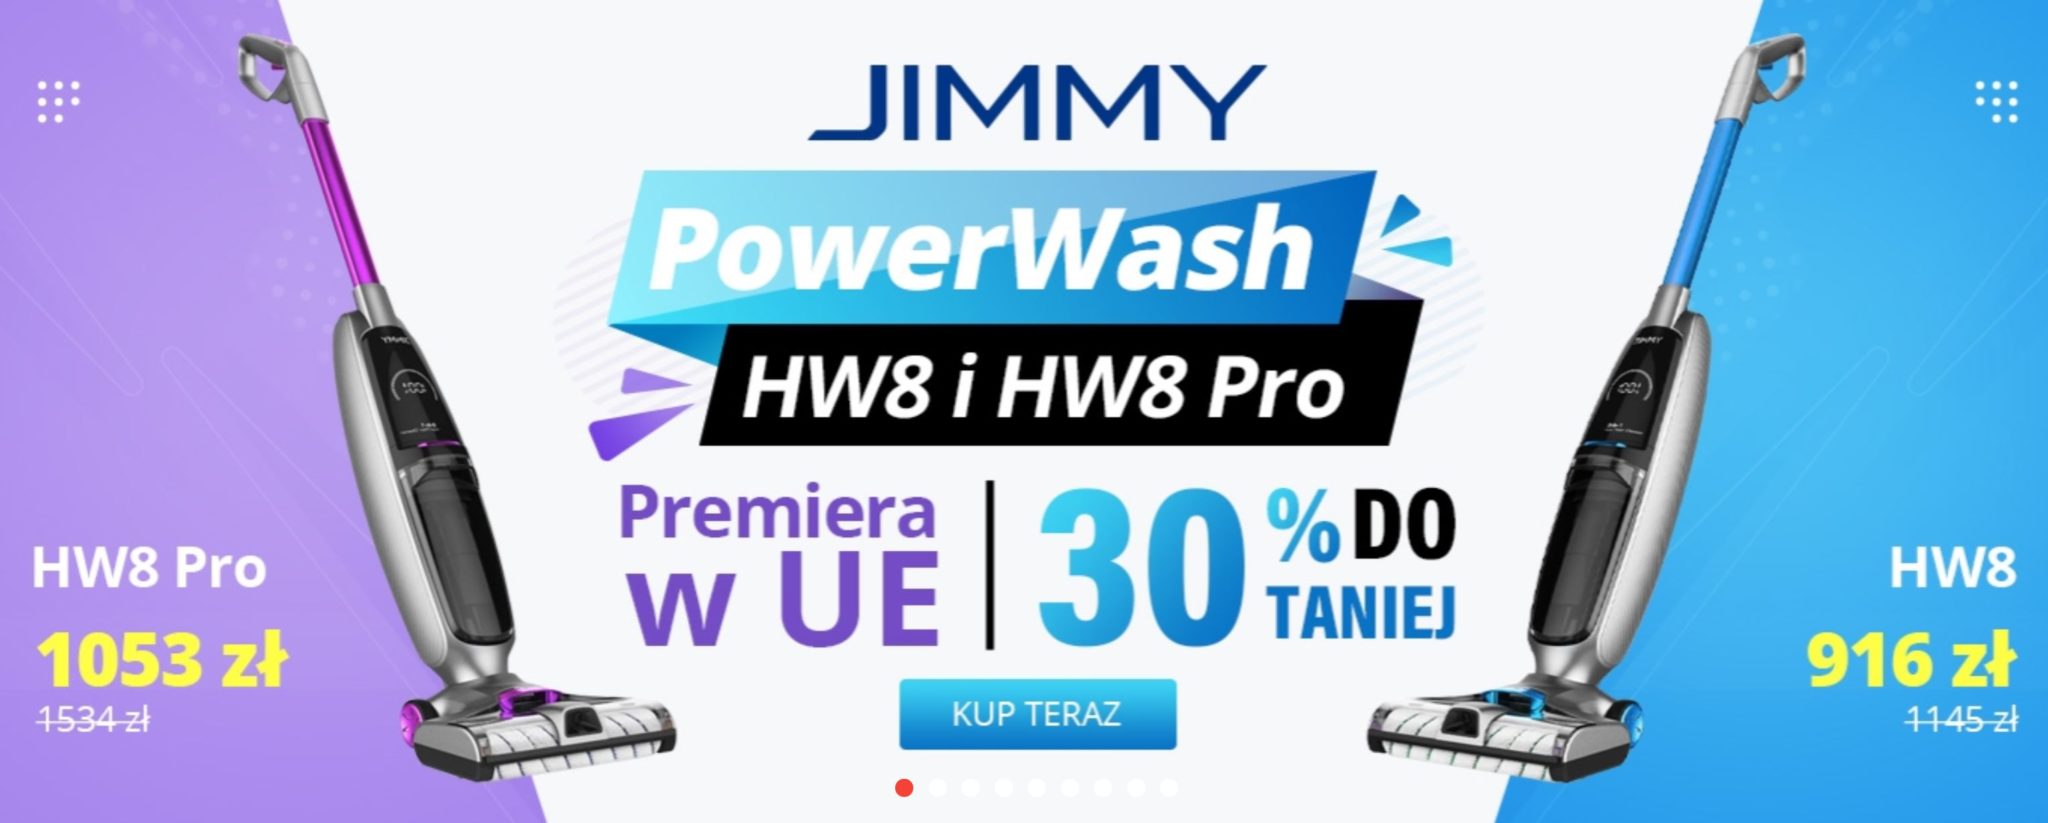 Jimmy HW 8 i HW8 Pro z wysyłką z polski - kody rabatowe